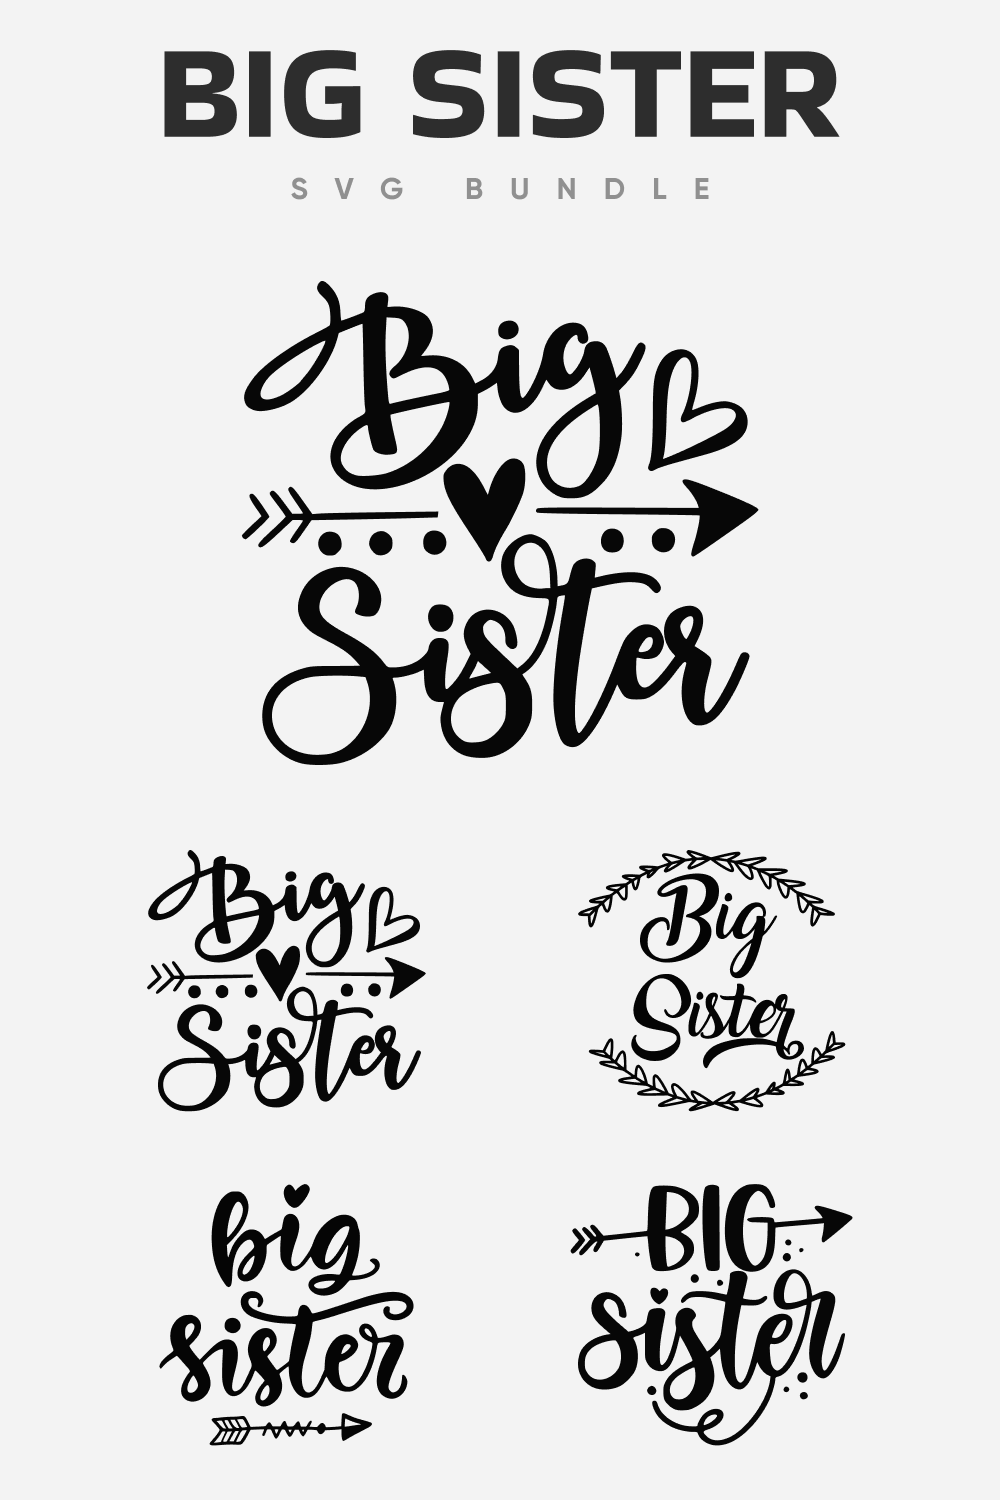 Big sister SVG bundle.